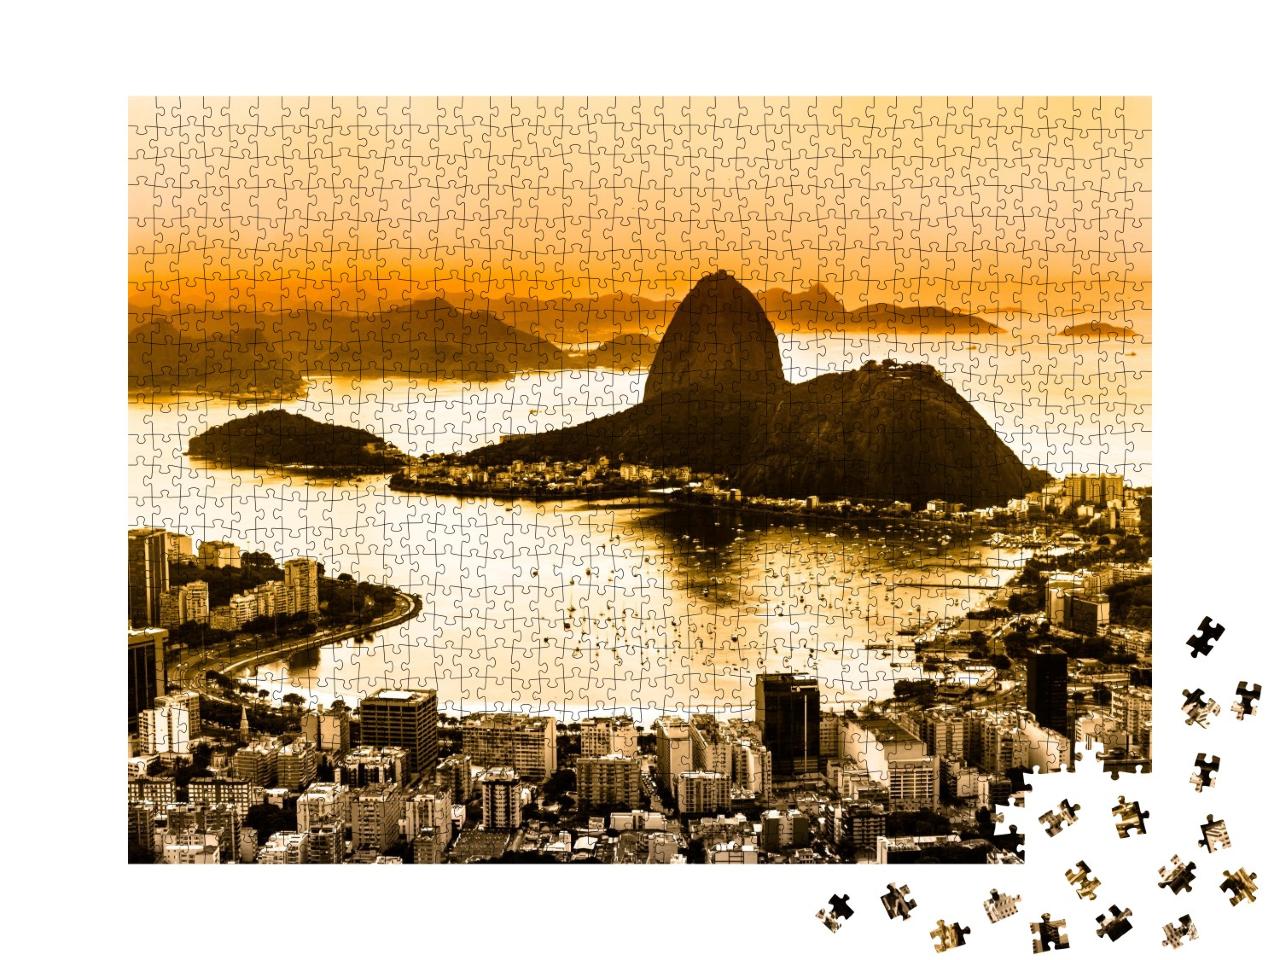 Puzzle de 1000 pièces « Pain de Sucre et plage de Botafogo à Rio de Janeiro, Brésil »